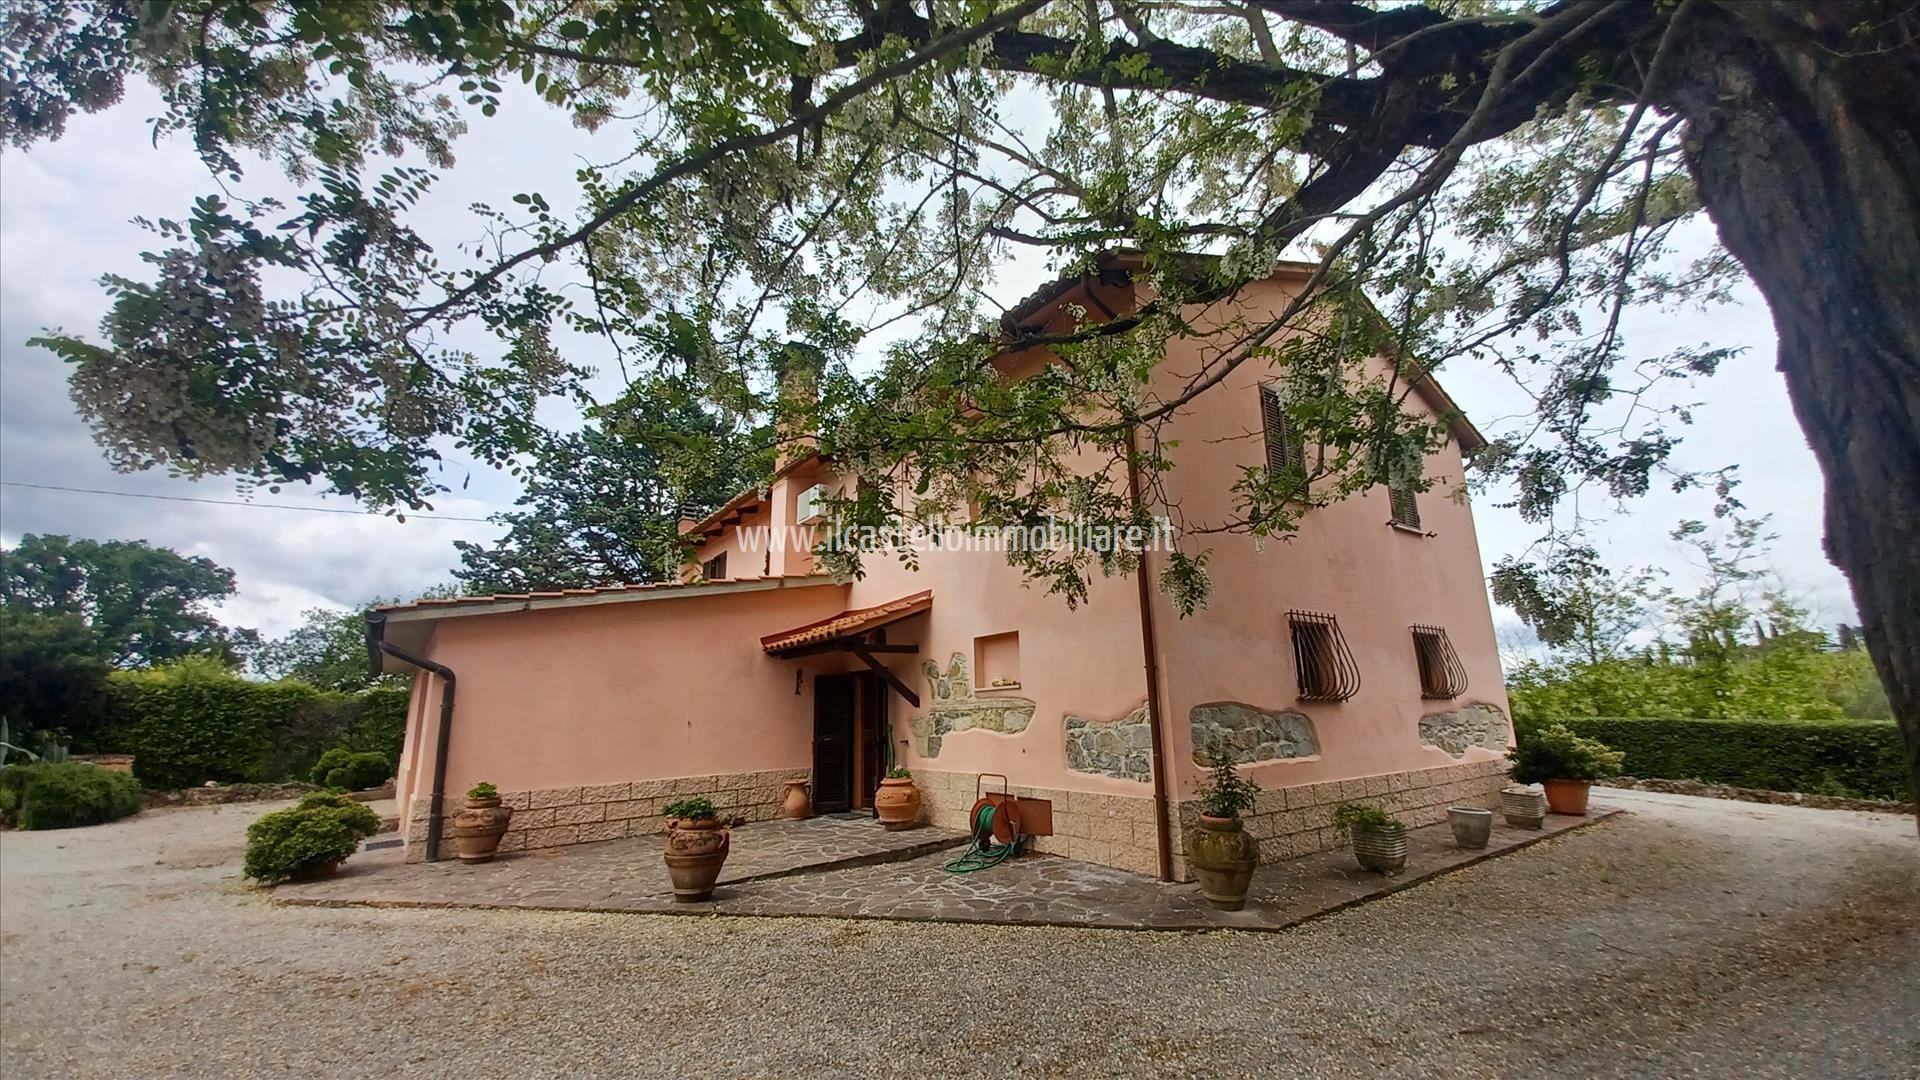 Rustico / Casale in vendita a Cetona, 4 locali, prezzo € 380.000 | PortaleAgenzieImmobiliari.it